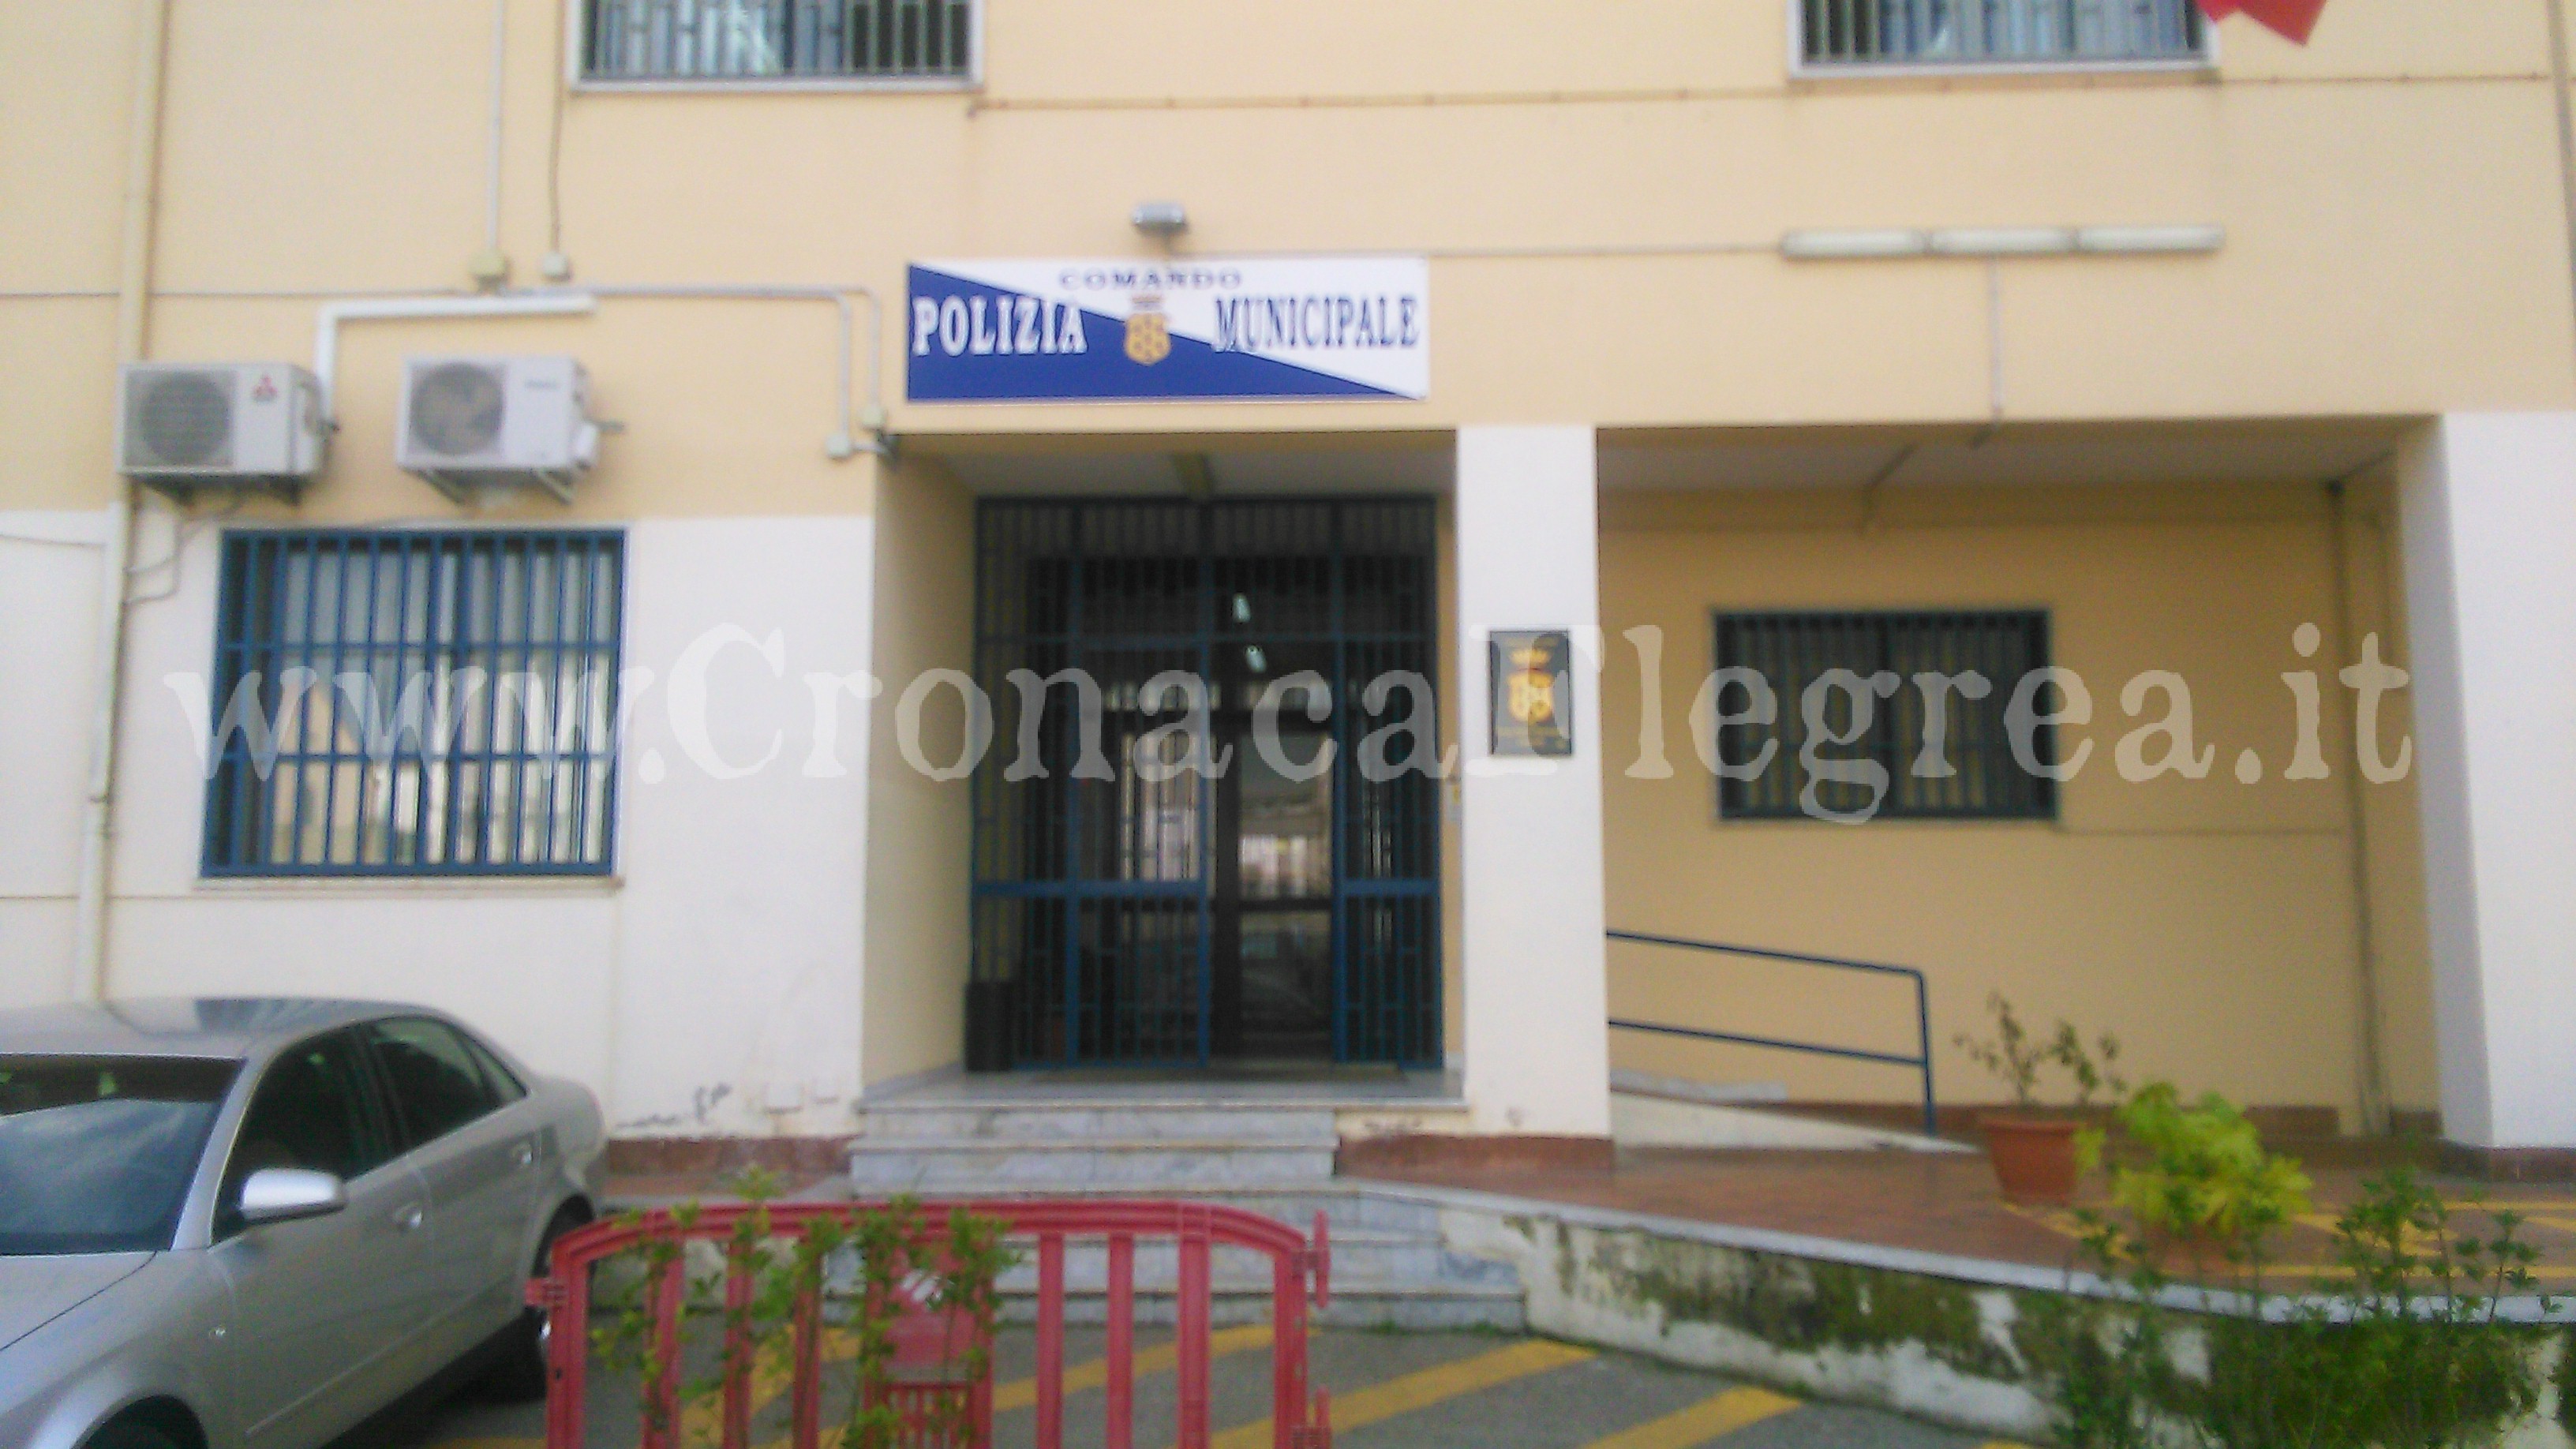 POZZUOLI/ Scontro nella Polizia Municipale «Indignati per l’atteggiamento di un’esigua minoranza di vigili»